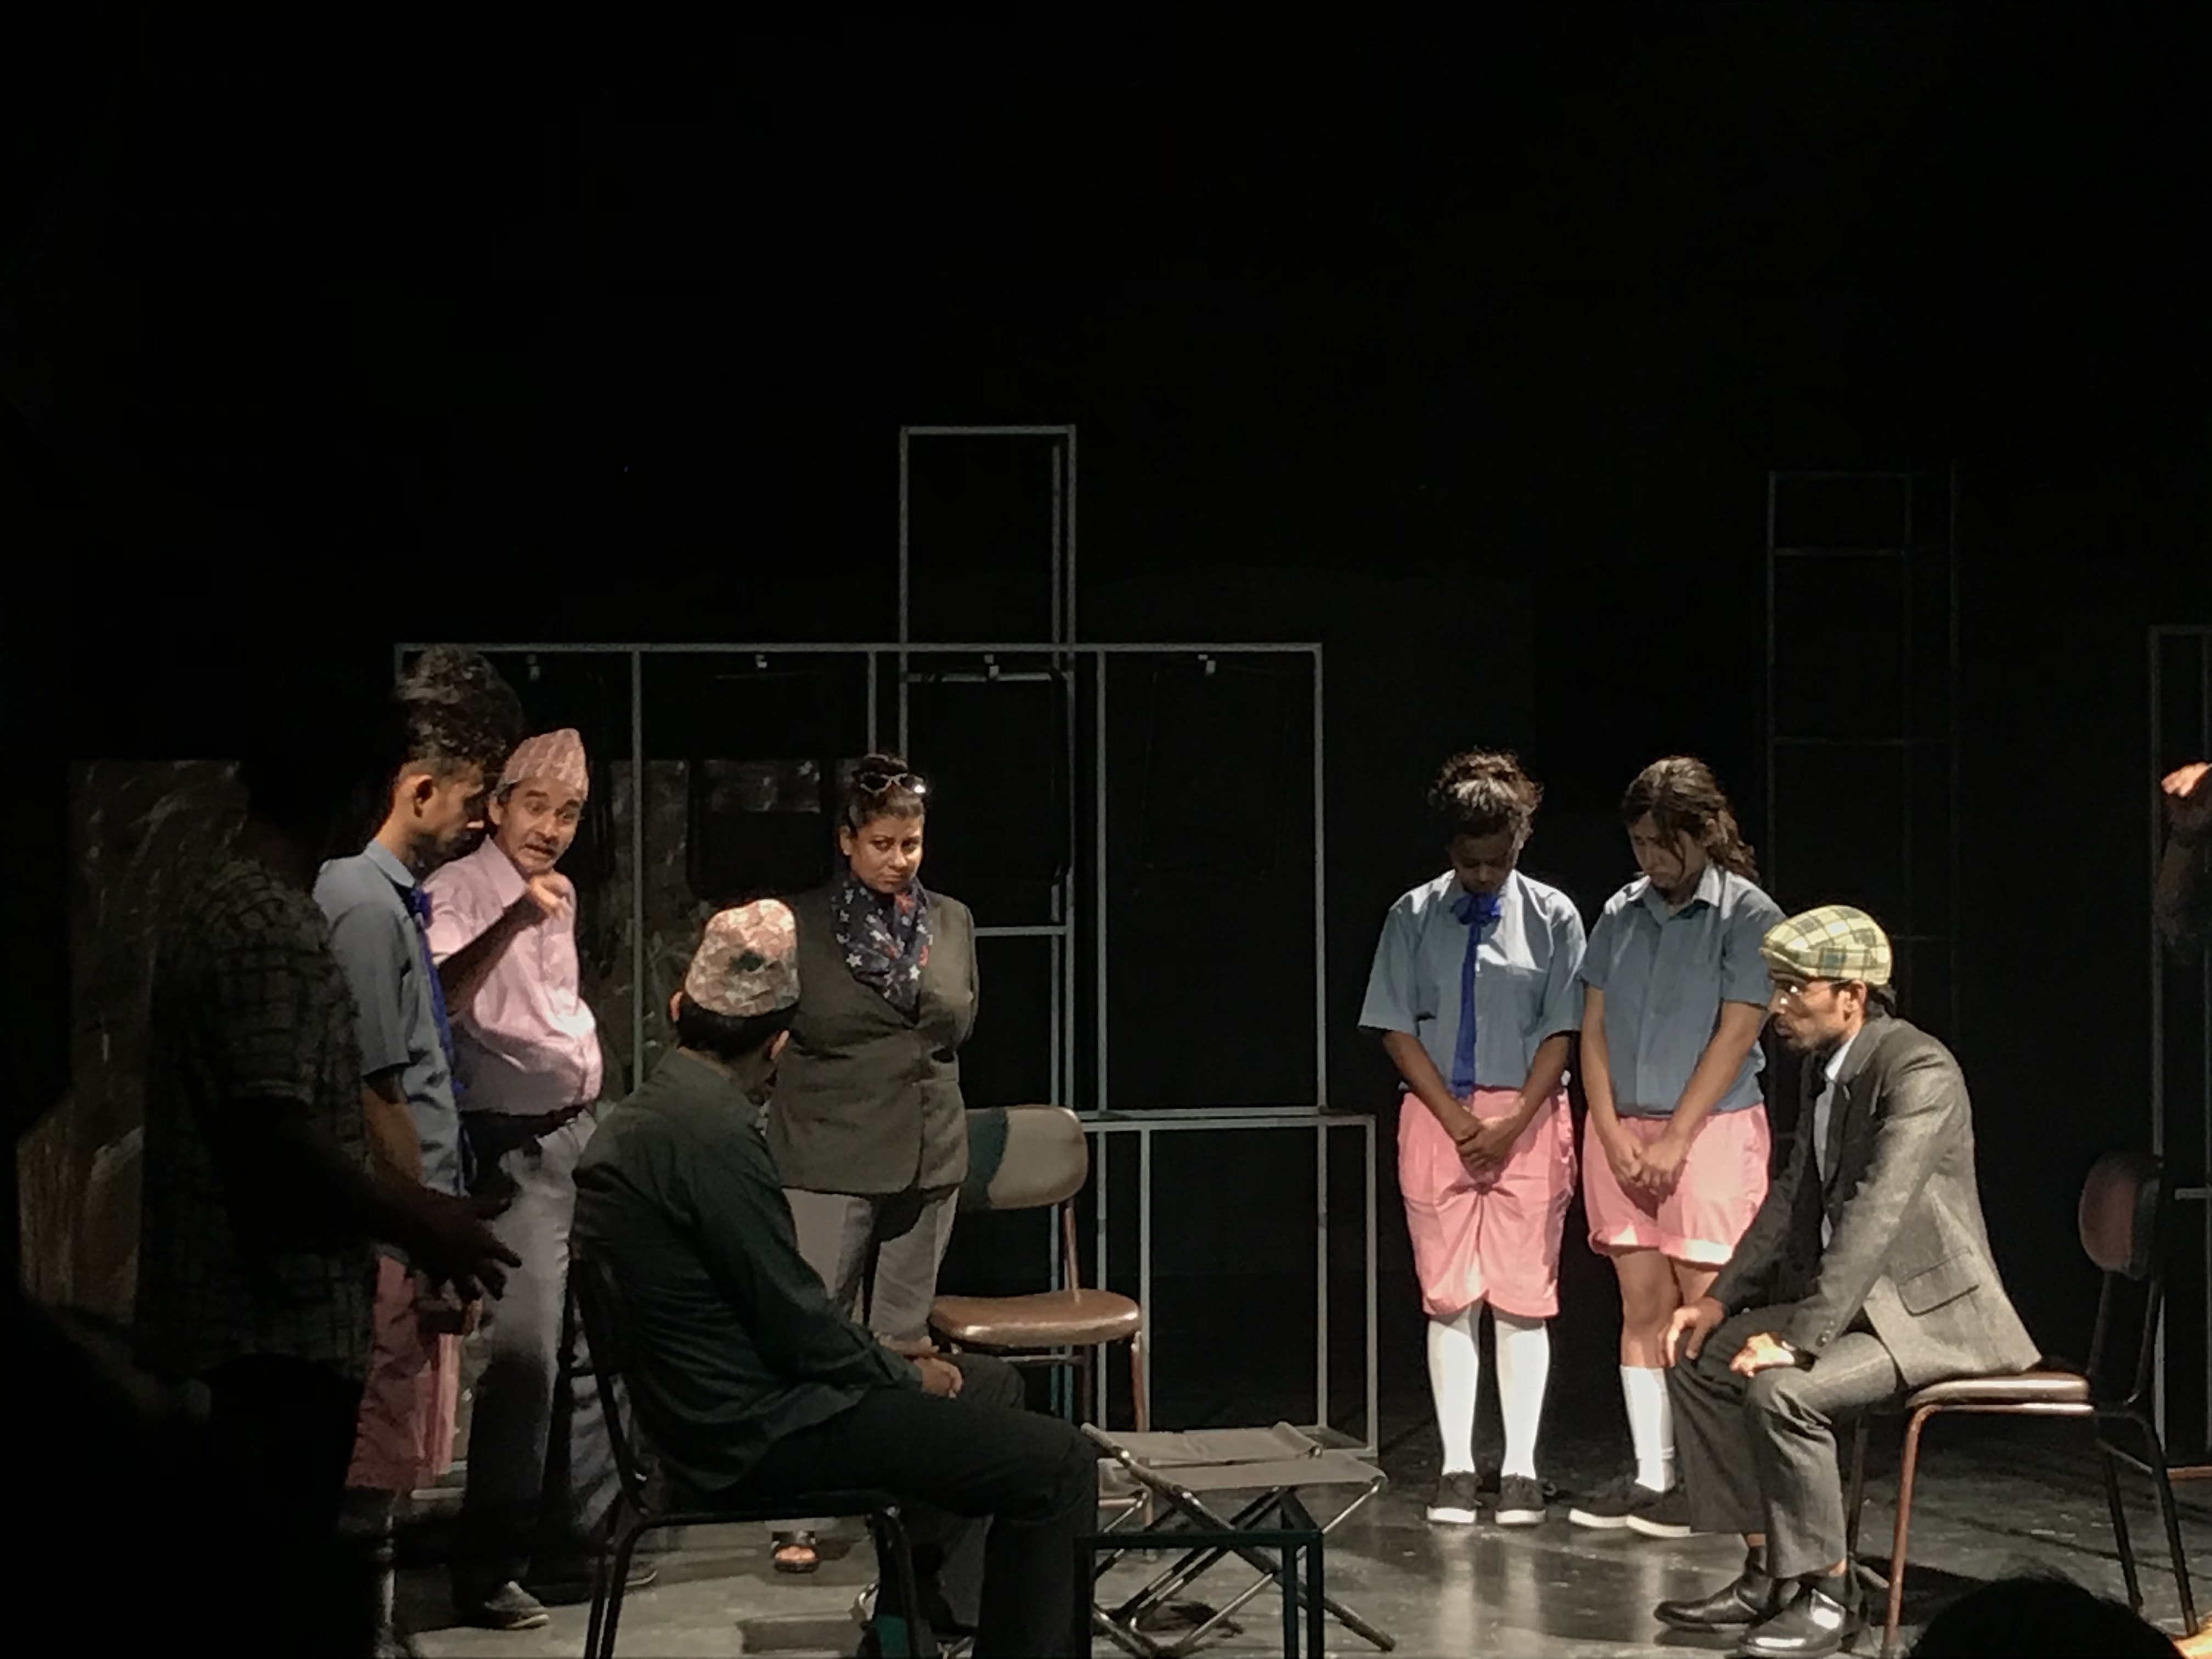 नाटककार घिमिरे युवराज र अमजद प्रवेजद्वारा निर्देशित नाटक ‘आँधीको मनोरम नृत्य’  को एक दृश्य।